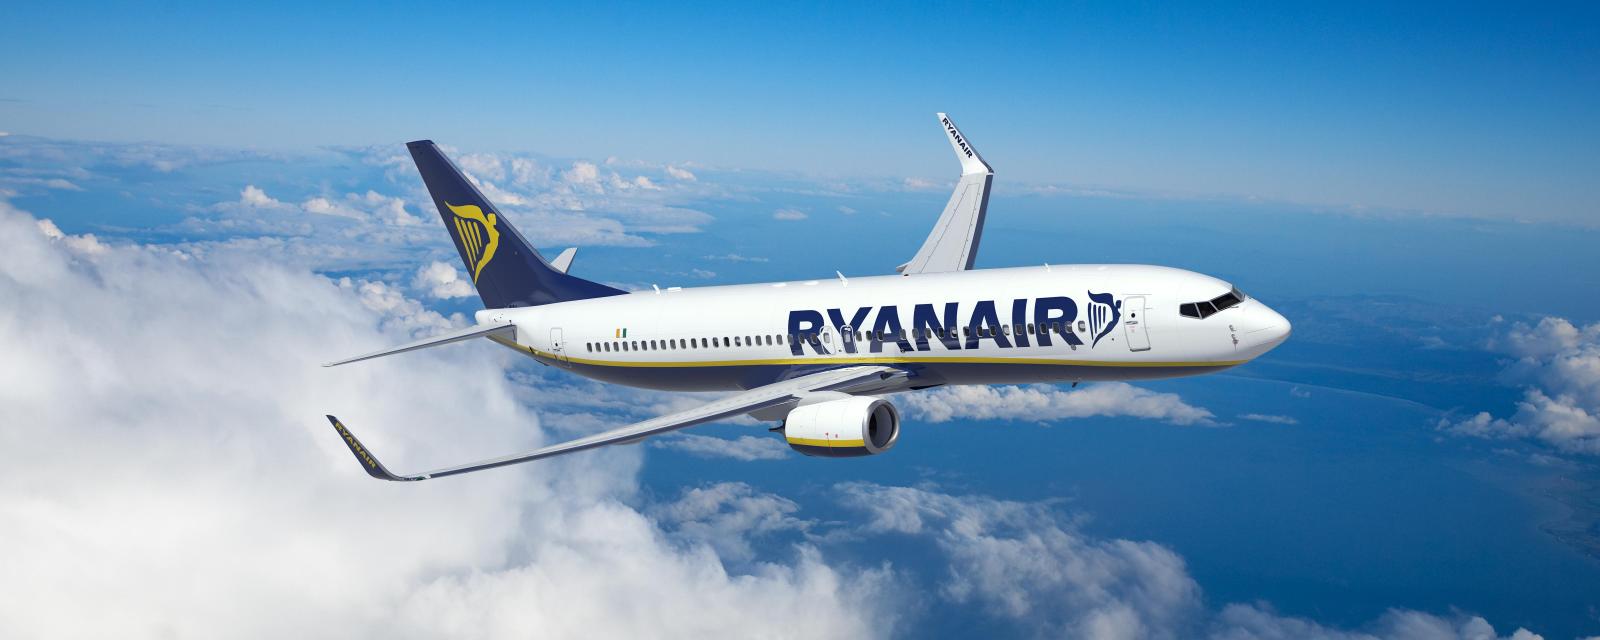 Ryanair ukida još jednu liniju iz Podgorice: Od novembra bez jeftinih letova ka Briselu - CdM